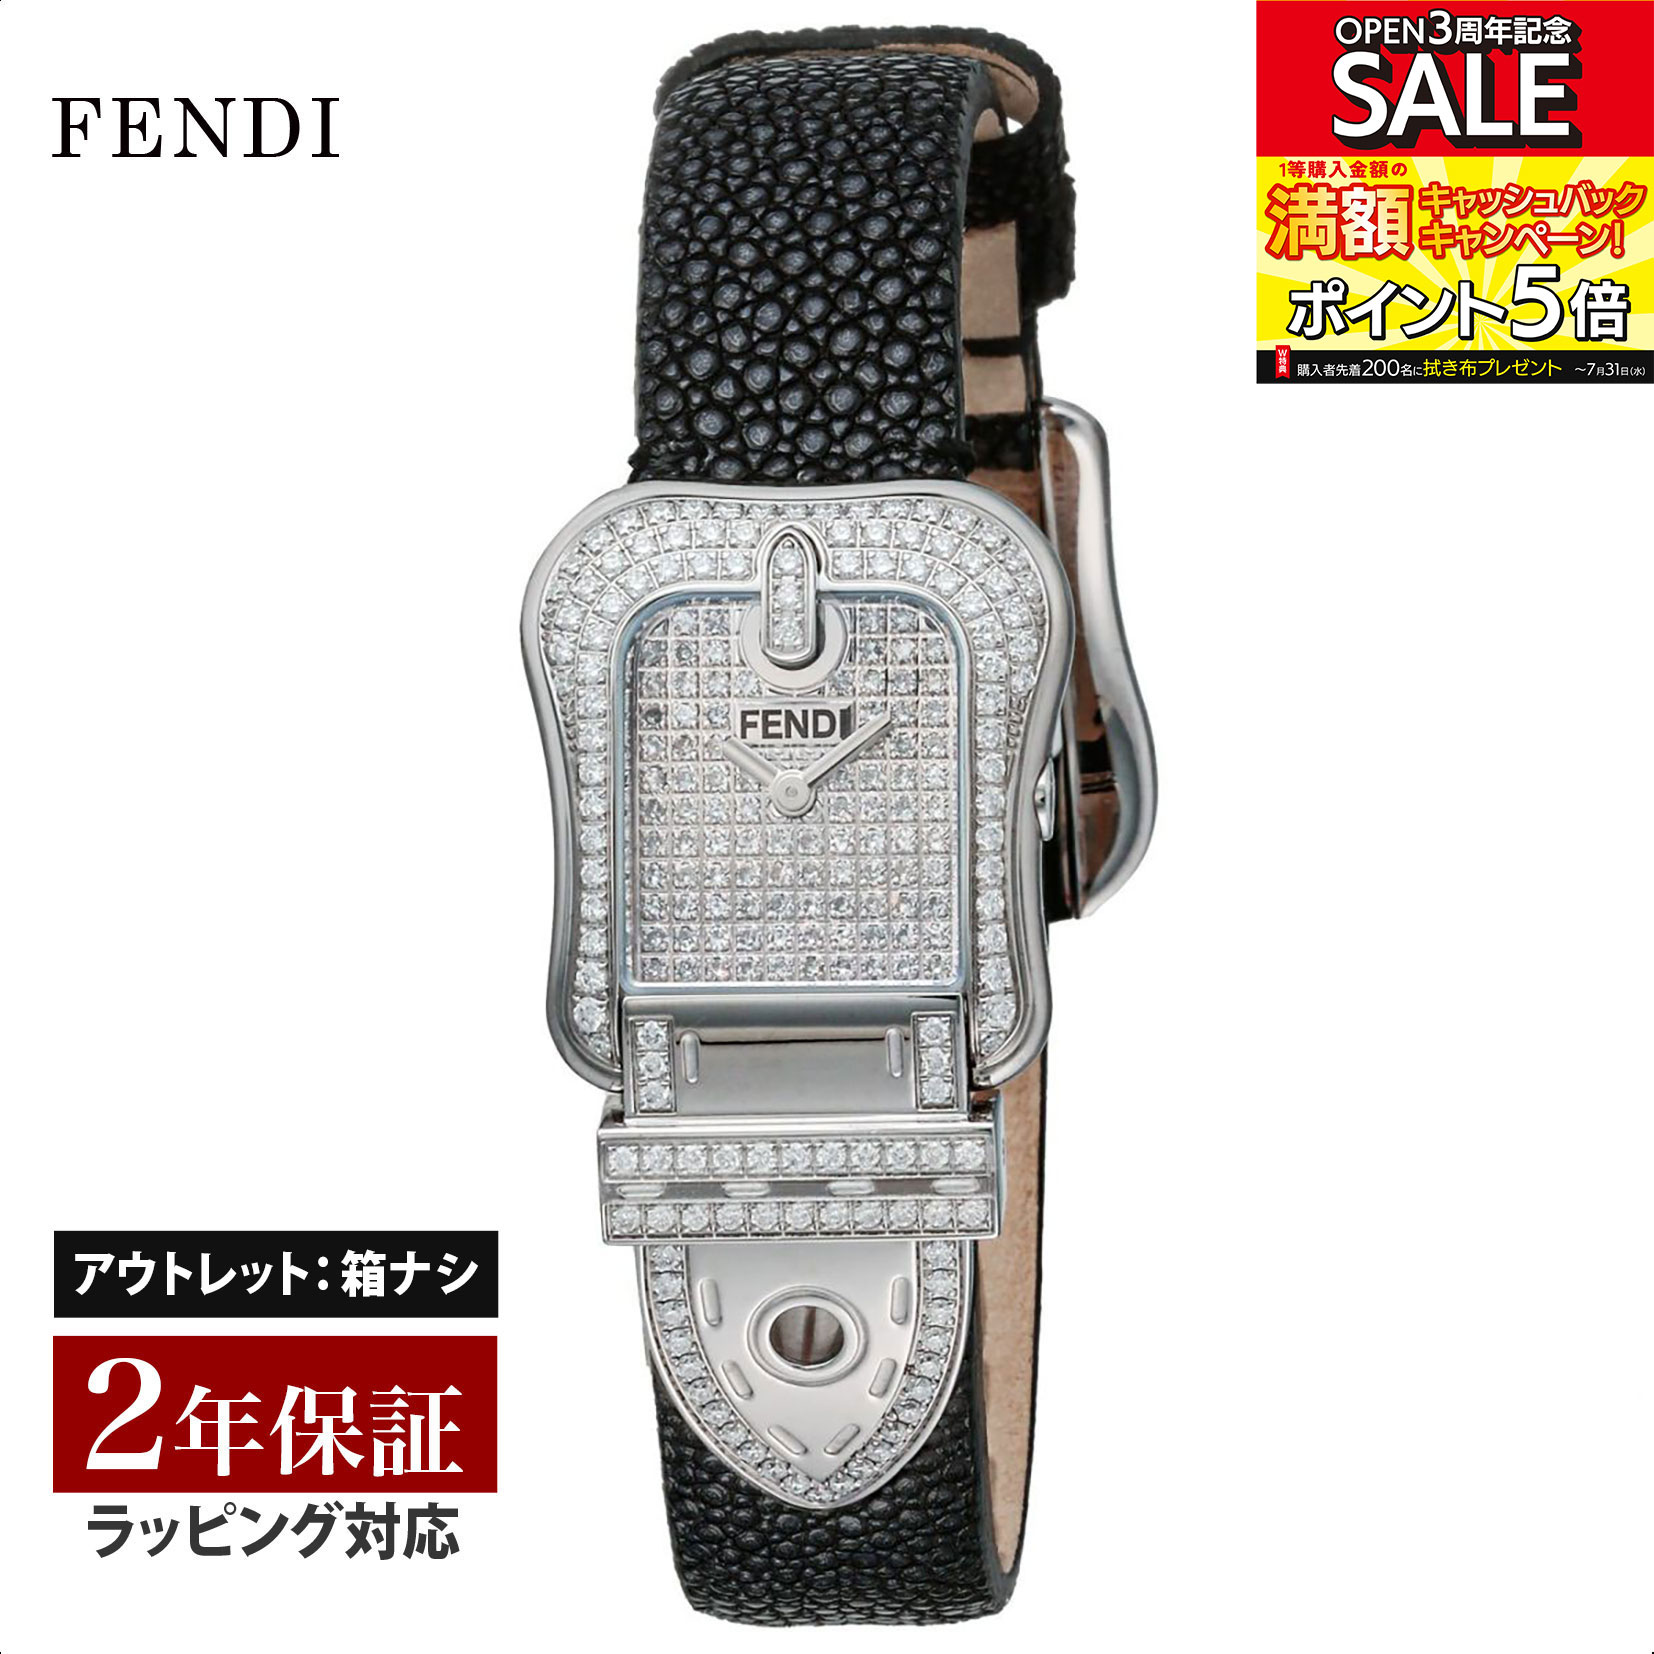 【クリアランスSALE】 FENDI フェンディ B.FENDI クォーツ レディース ダイヤモンド F383241PC2 腕時計 高級腕時計 ブランド 